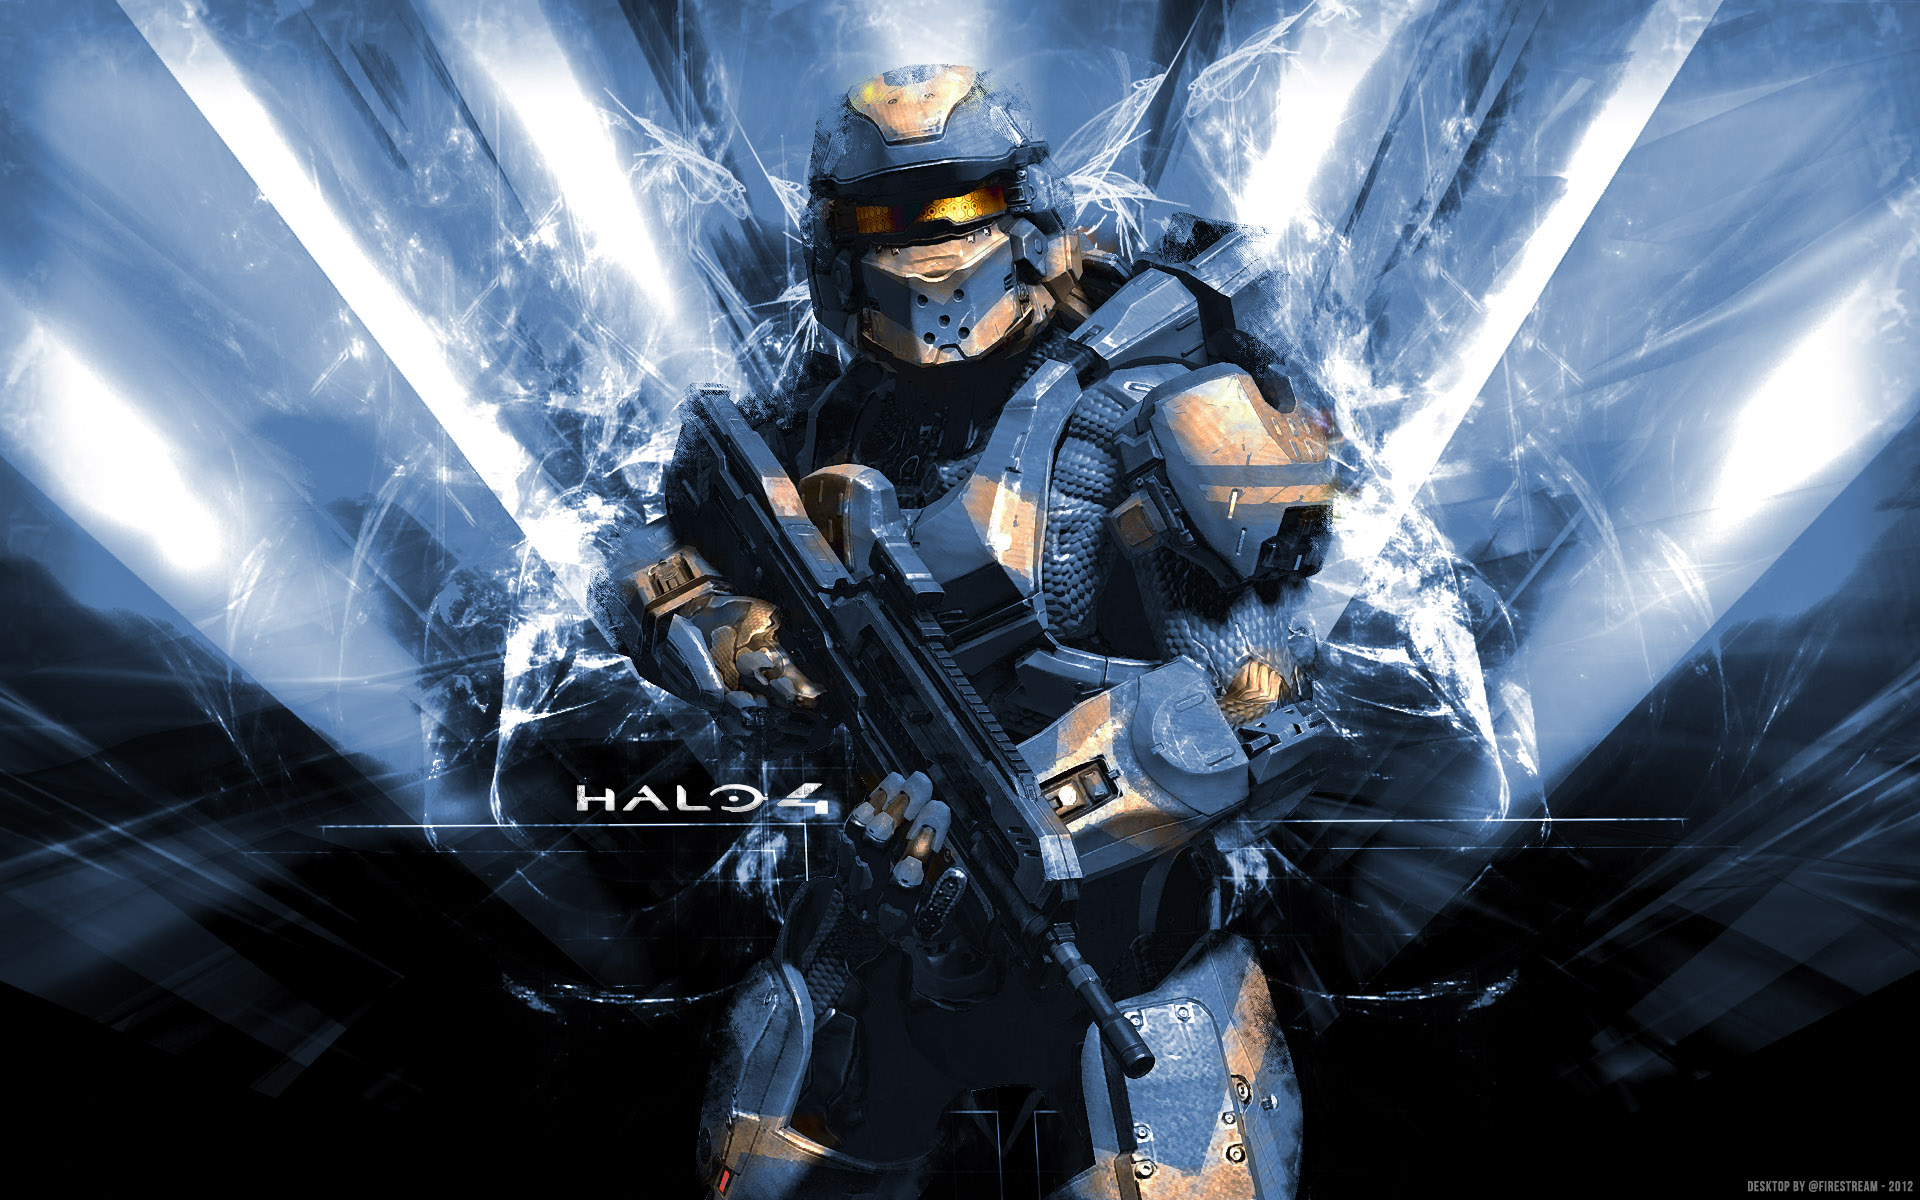 Description Halo 4 HD Wallpaper is a hi res Wallpaper for pc desktops 1920x1200